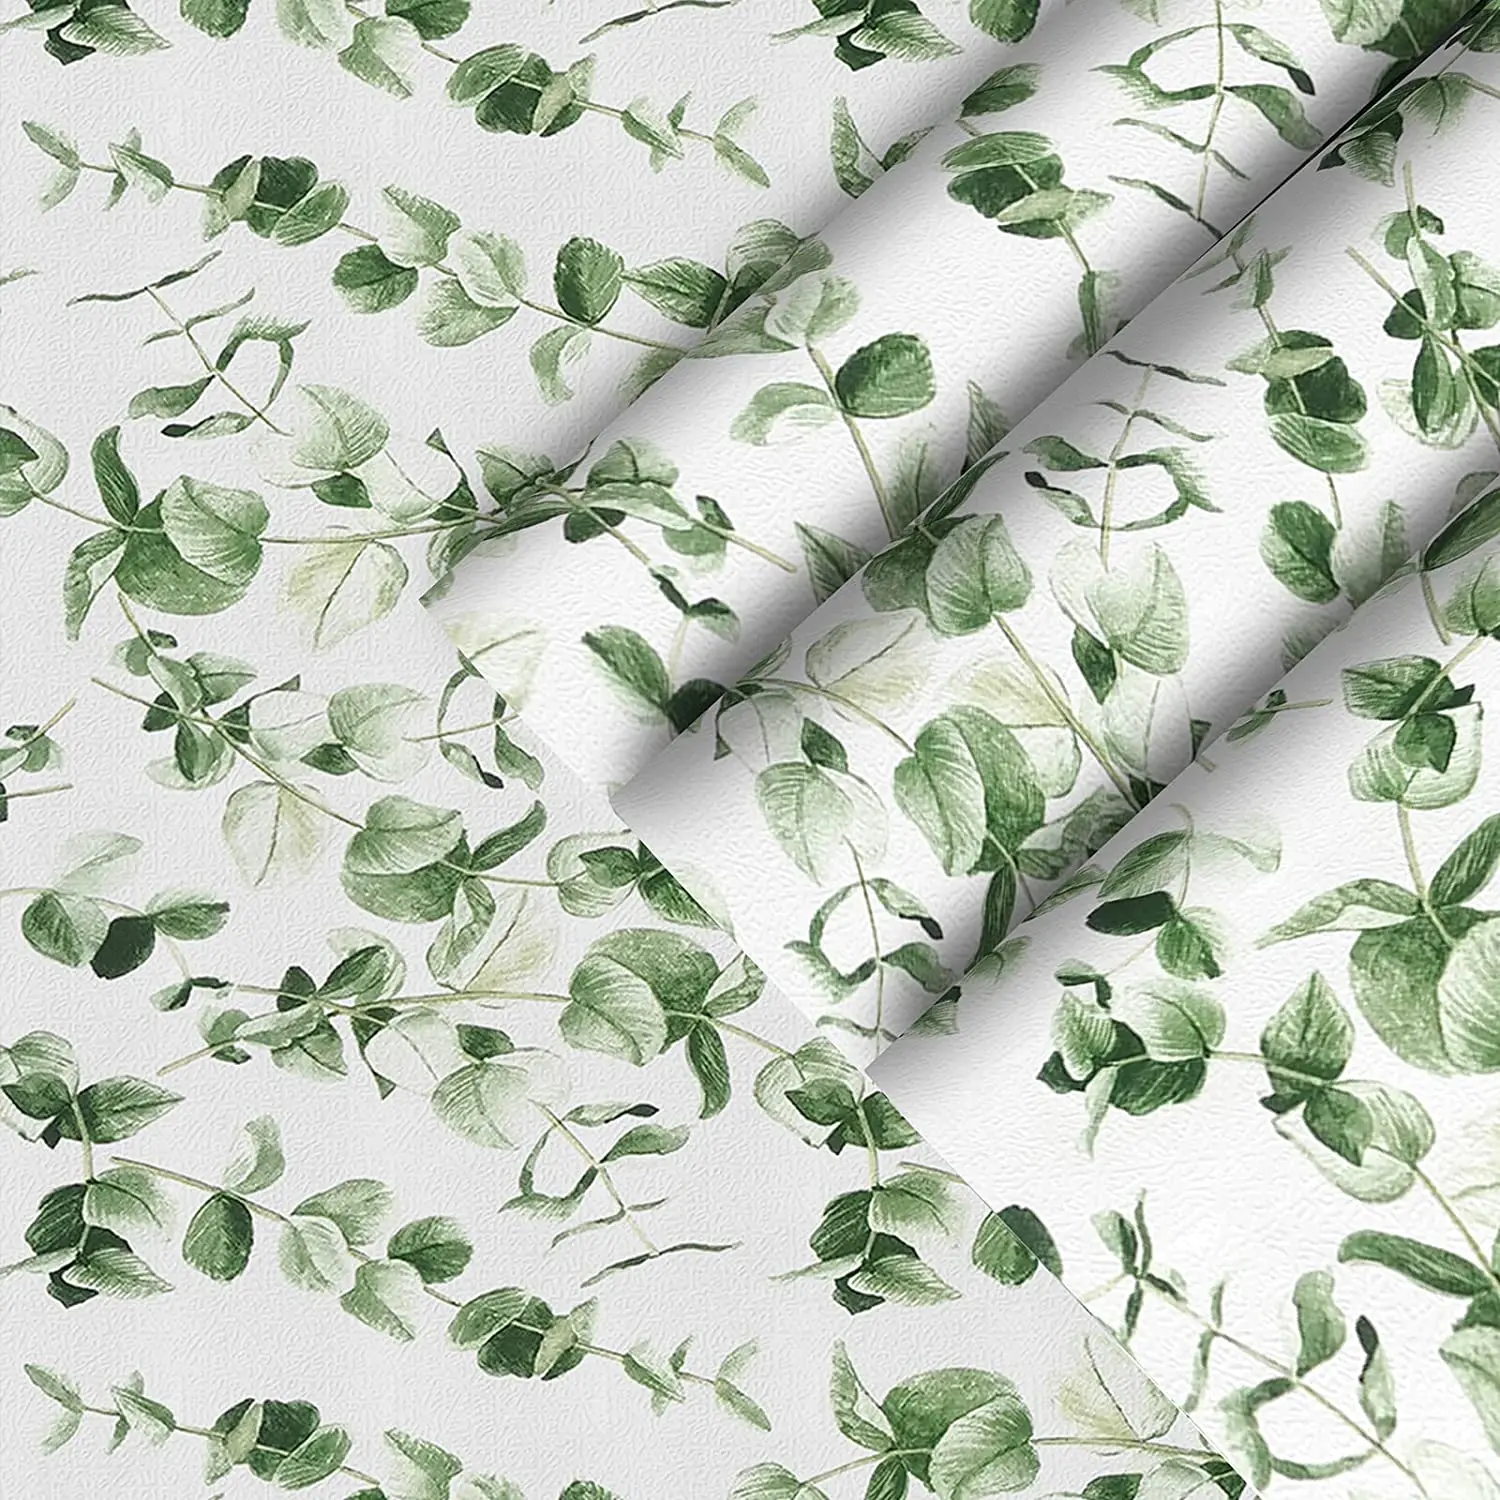 

Обои с зелеными листьями в винтажном стиле, самоклеящиеся обои с клейкой поверхностью, современный дизайн стен для спальни